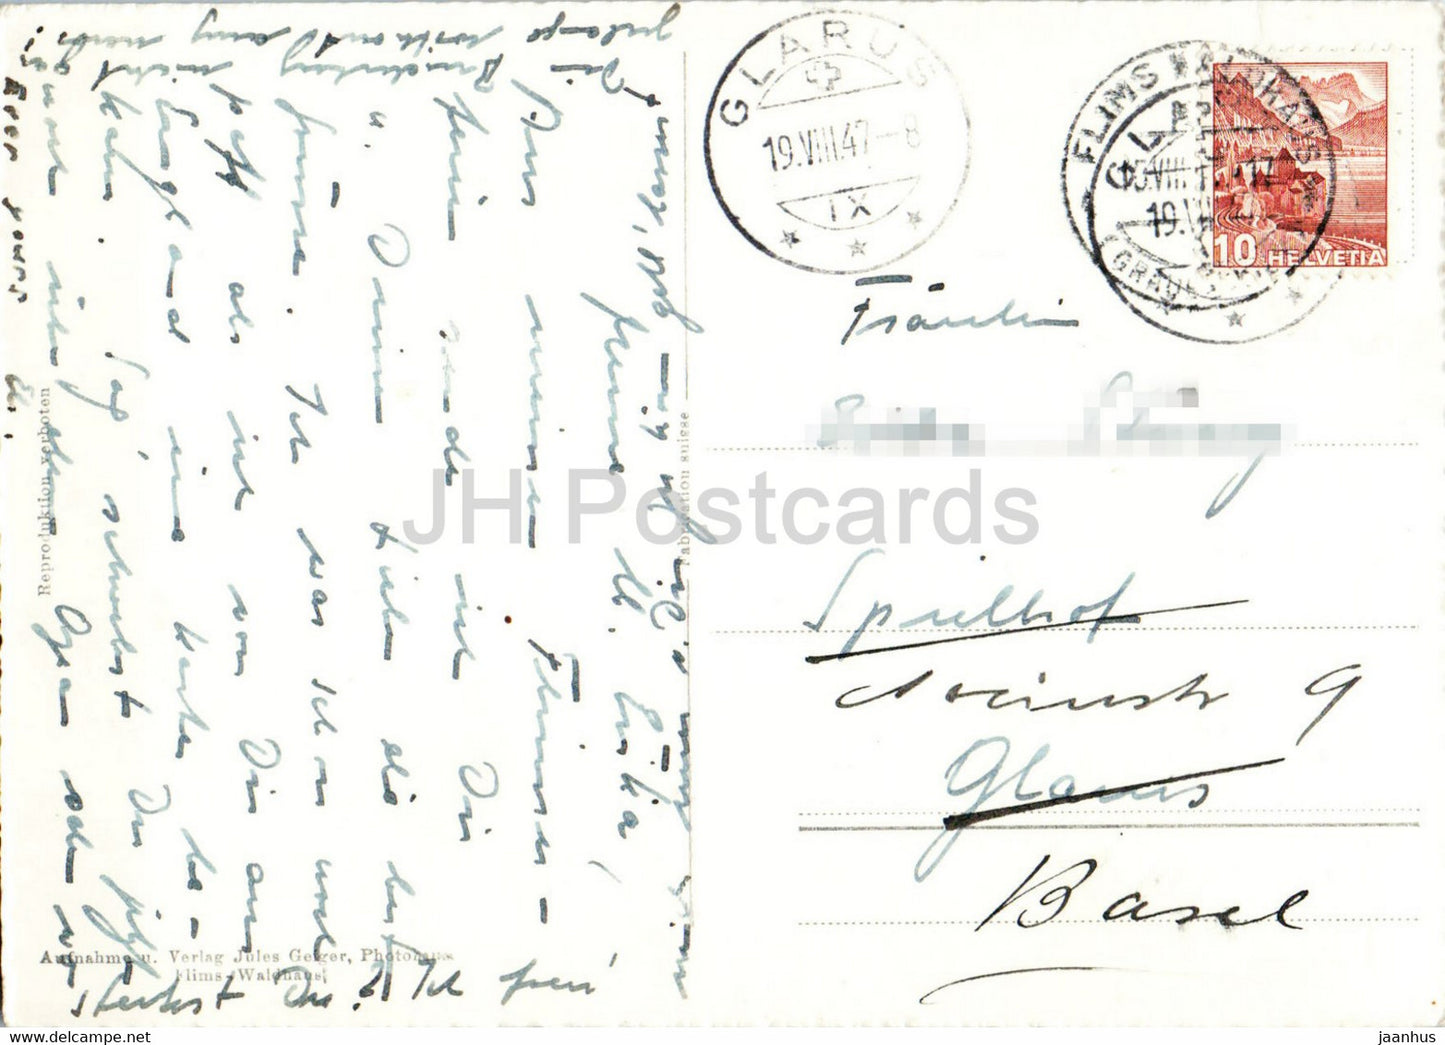 Flims - Motive am Caumasee - 1534 - carte postale ancienne - 1947 - Suisse - utilisé